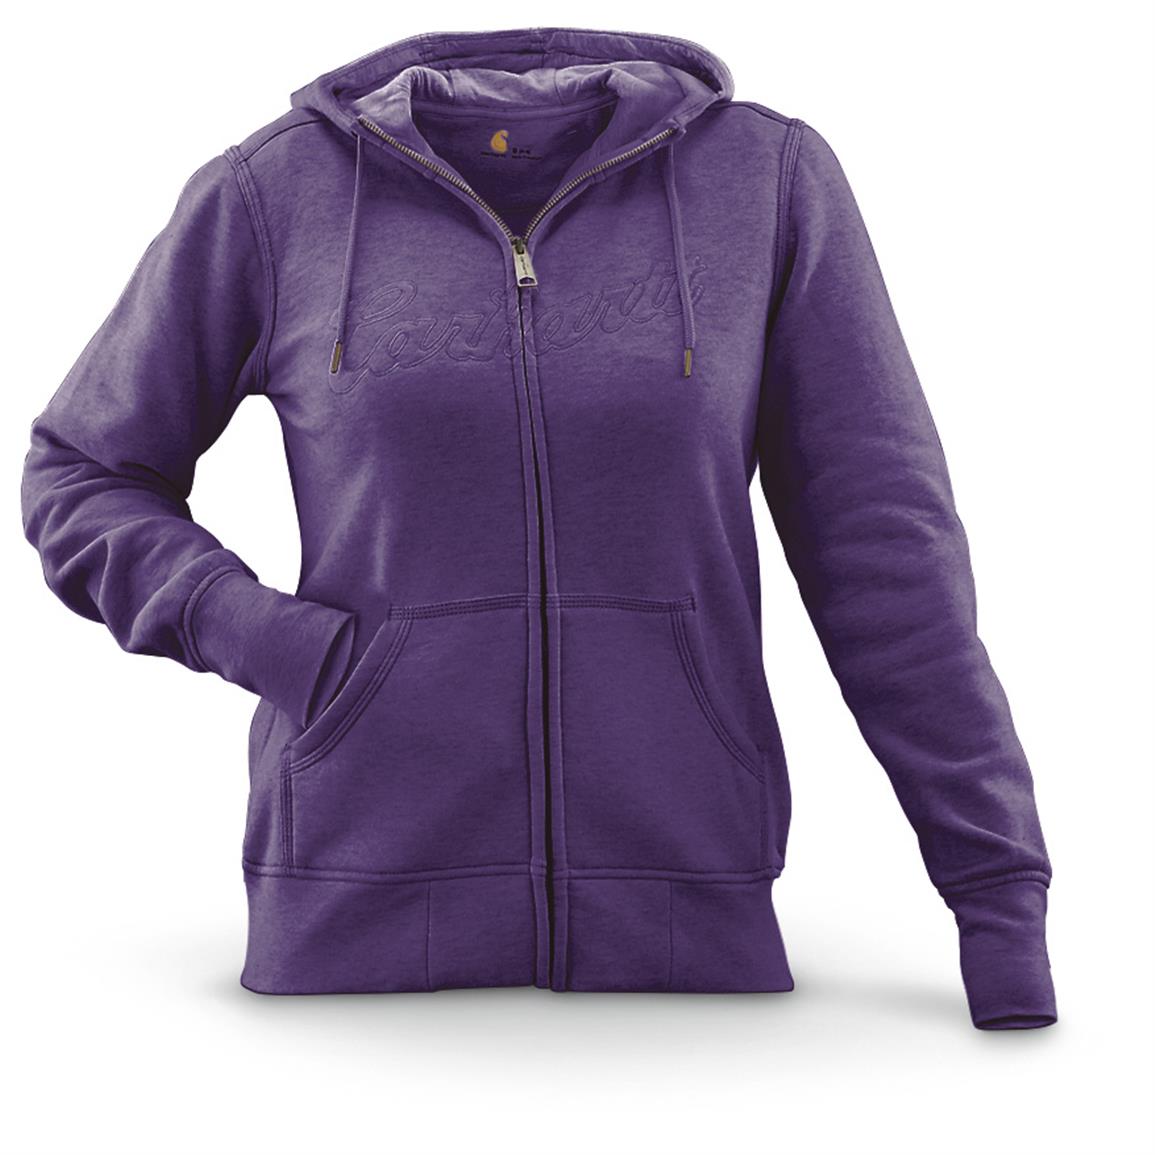 936+ Womens Full-Zip Hoodie Front View Of Hooded Sweatshirt Branding ...